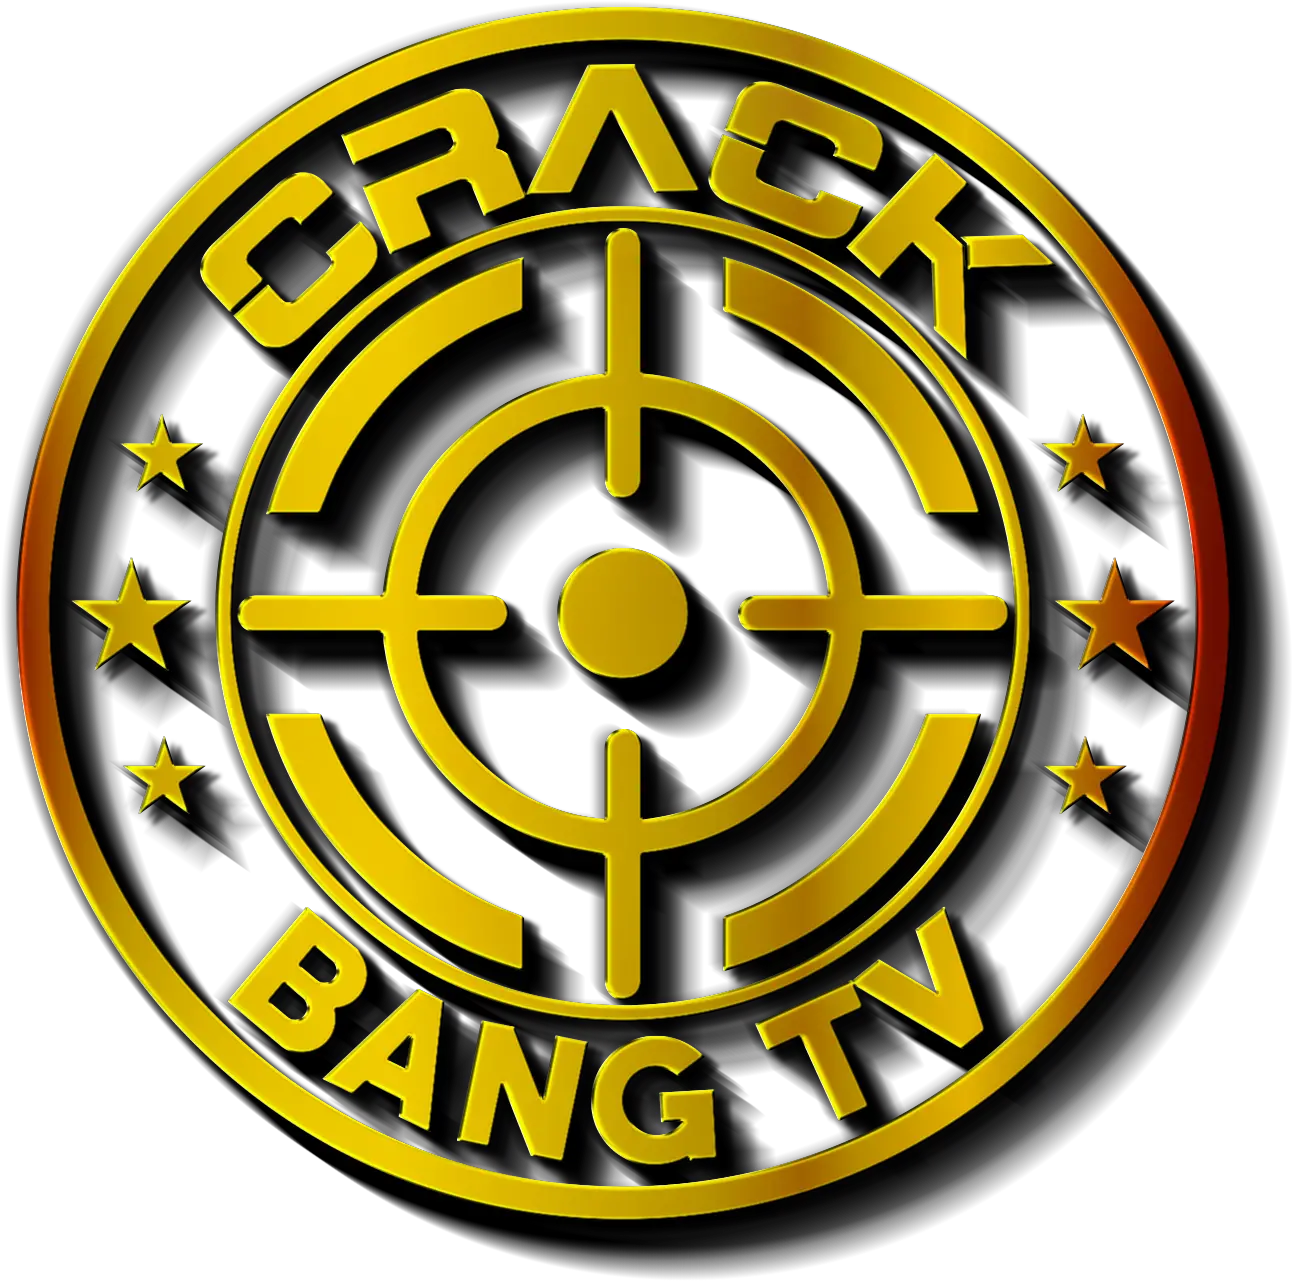 Ground Crack Png Crack Bang Tv Circle 5493051 Vippng Circle Crack Png